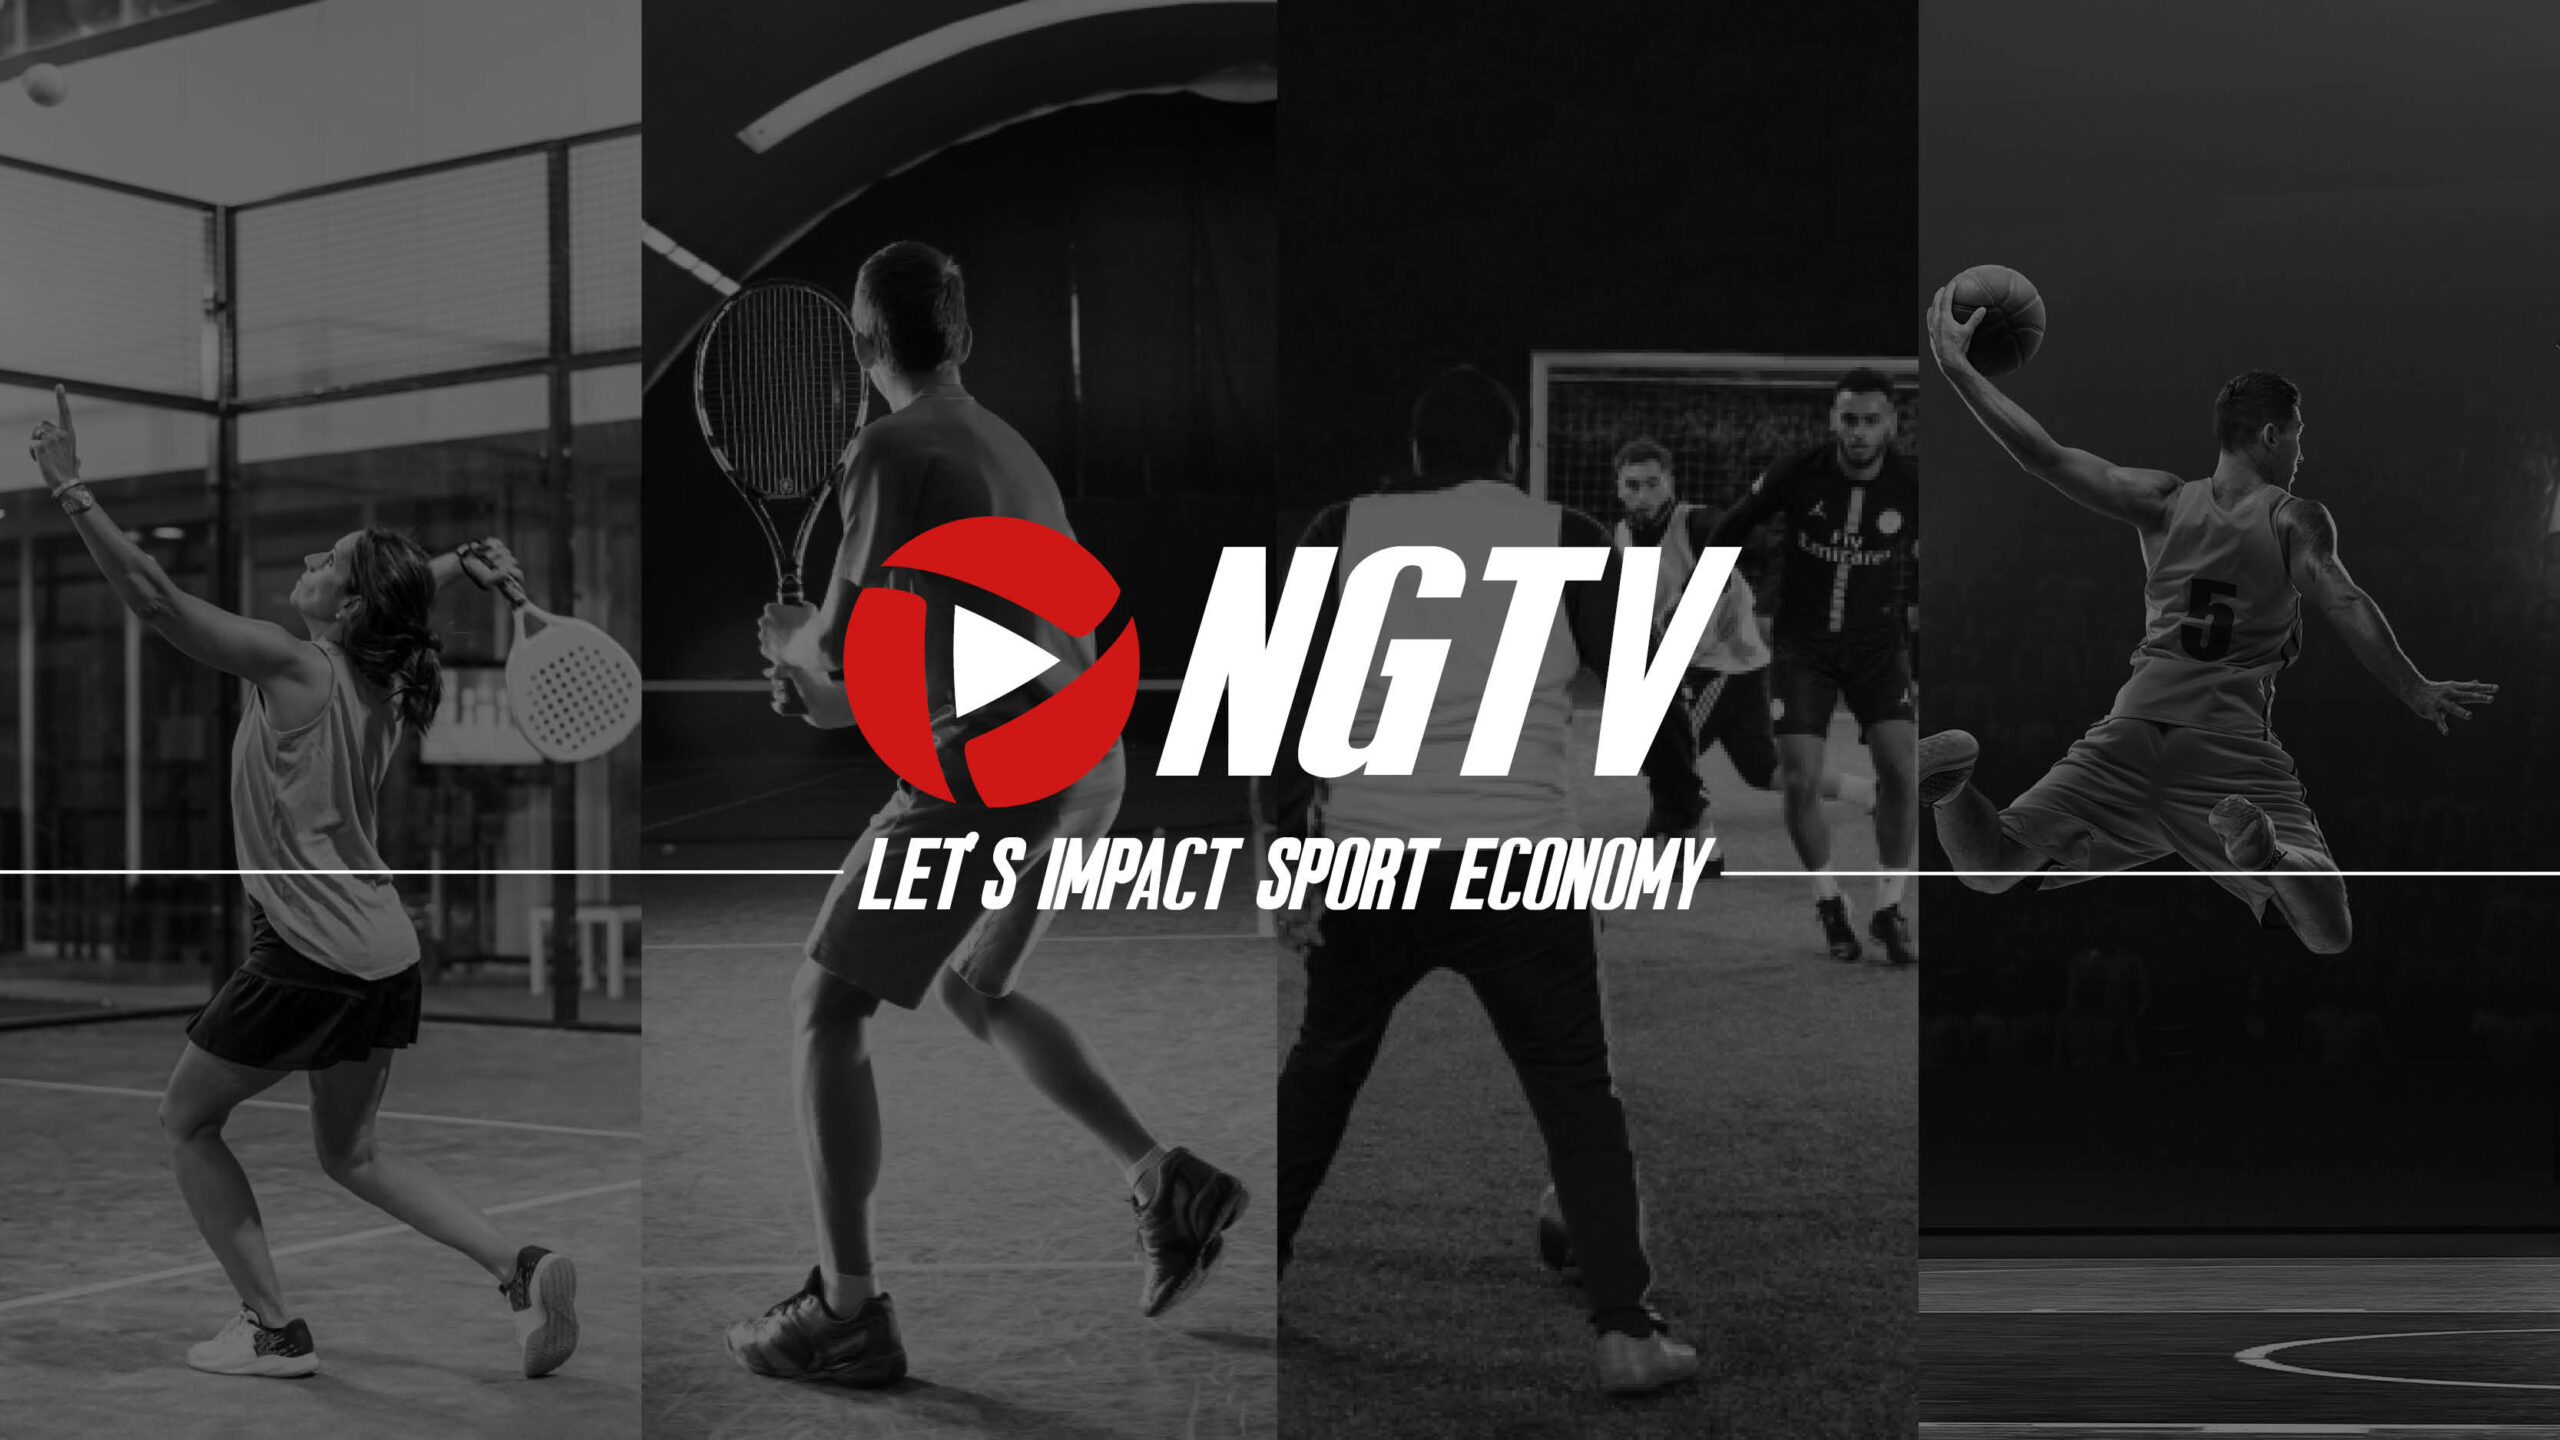 L'objectiu de NGTV: impactar en l'economia de l'esport!